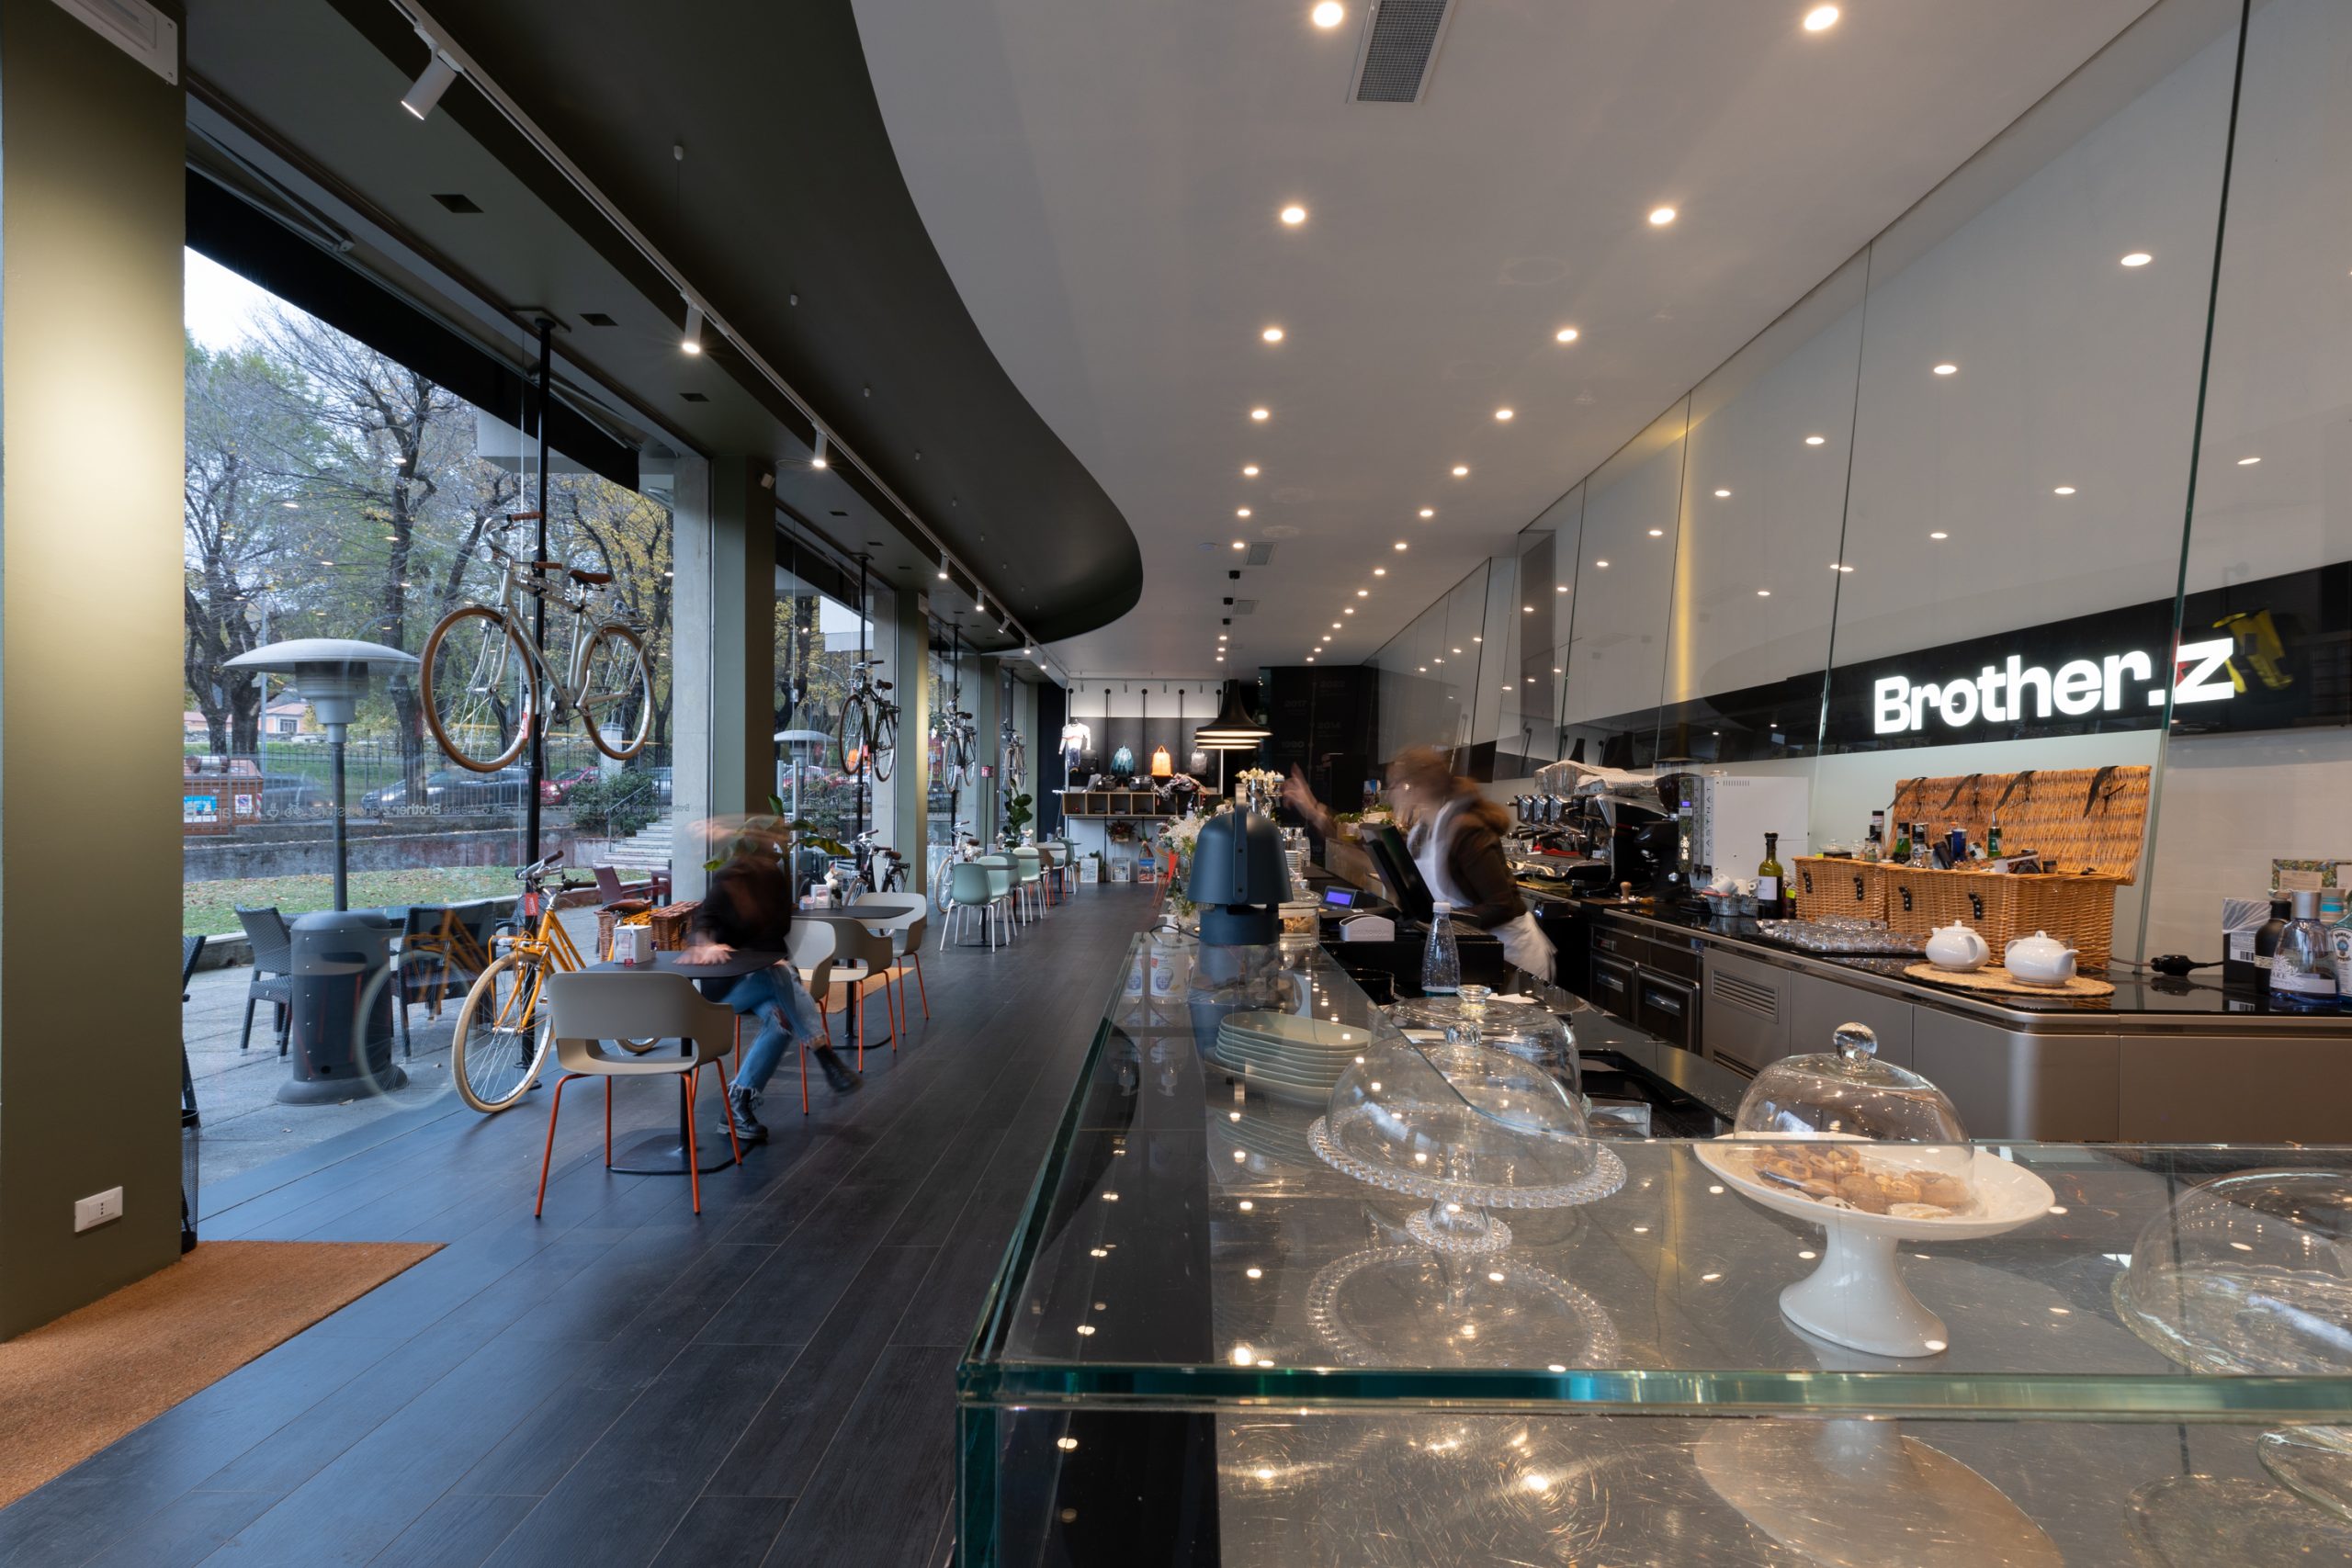 Foto di un locale/caffetteria che mostra il bancone on le cose da mangiare e l'illuminazione data dai faretti sul soffitto